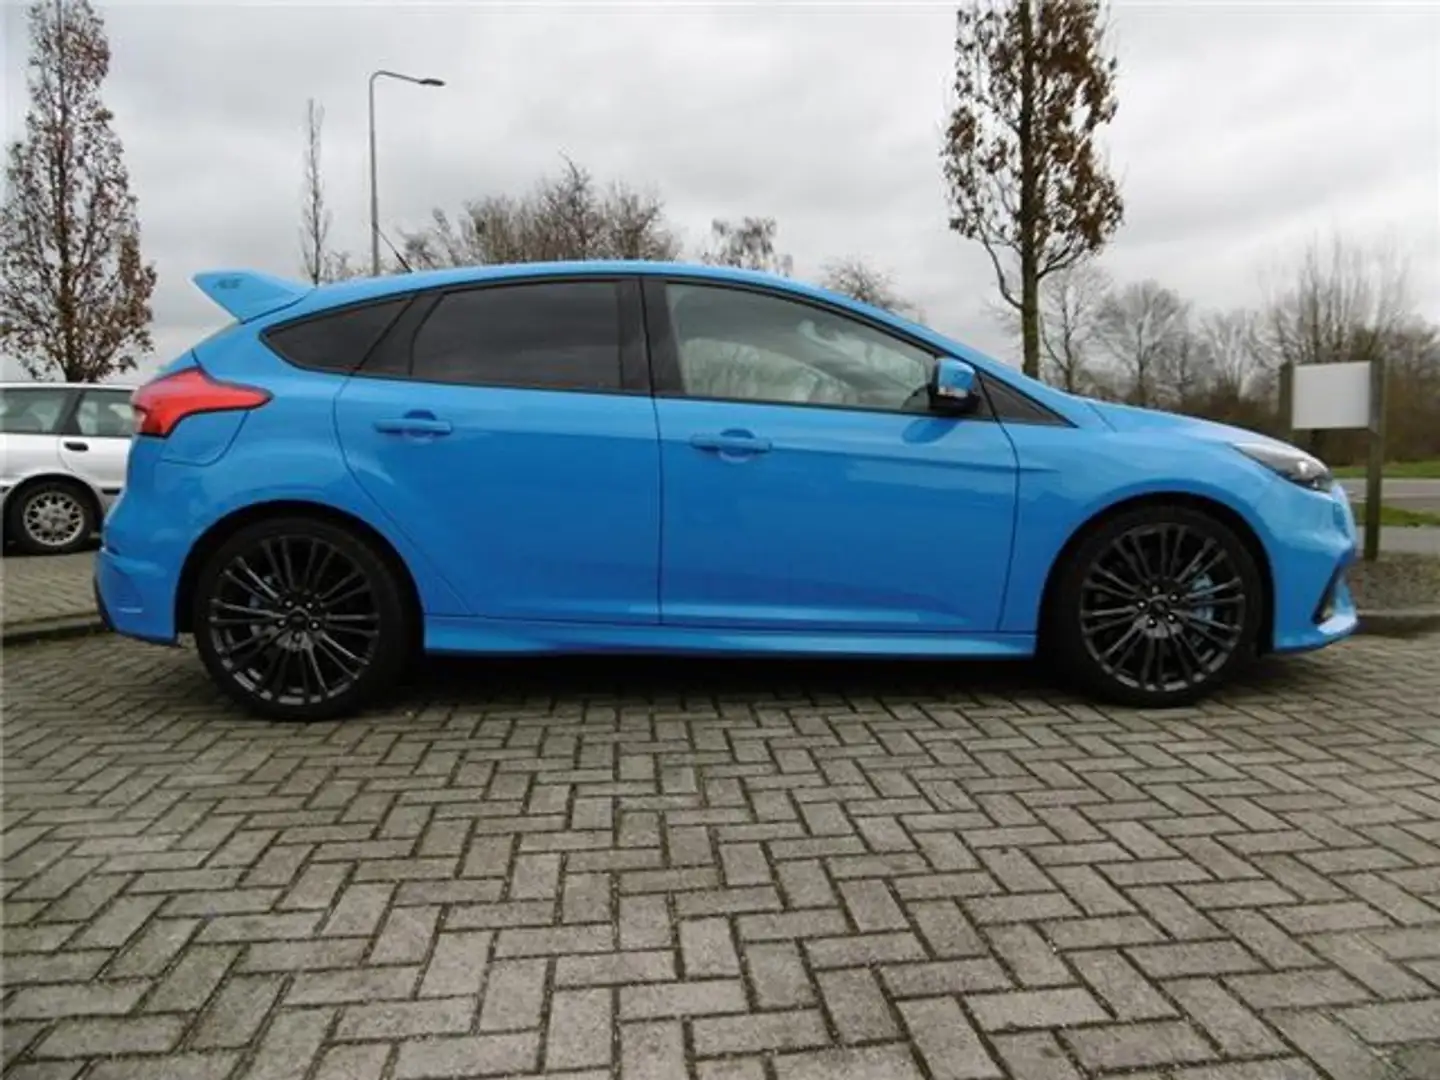 Ford Focus Sedan in Blauw gebruikt in METEREN voor € 36.900,-